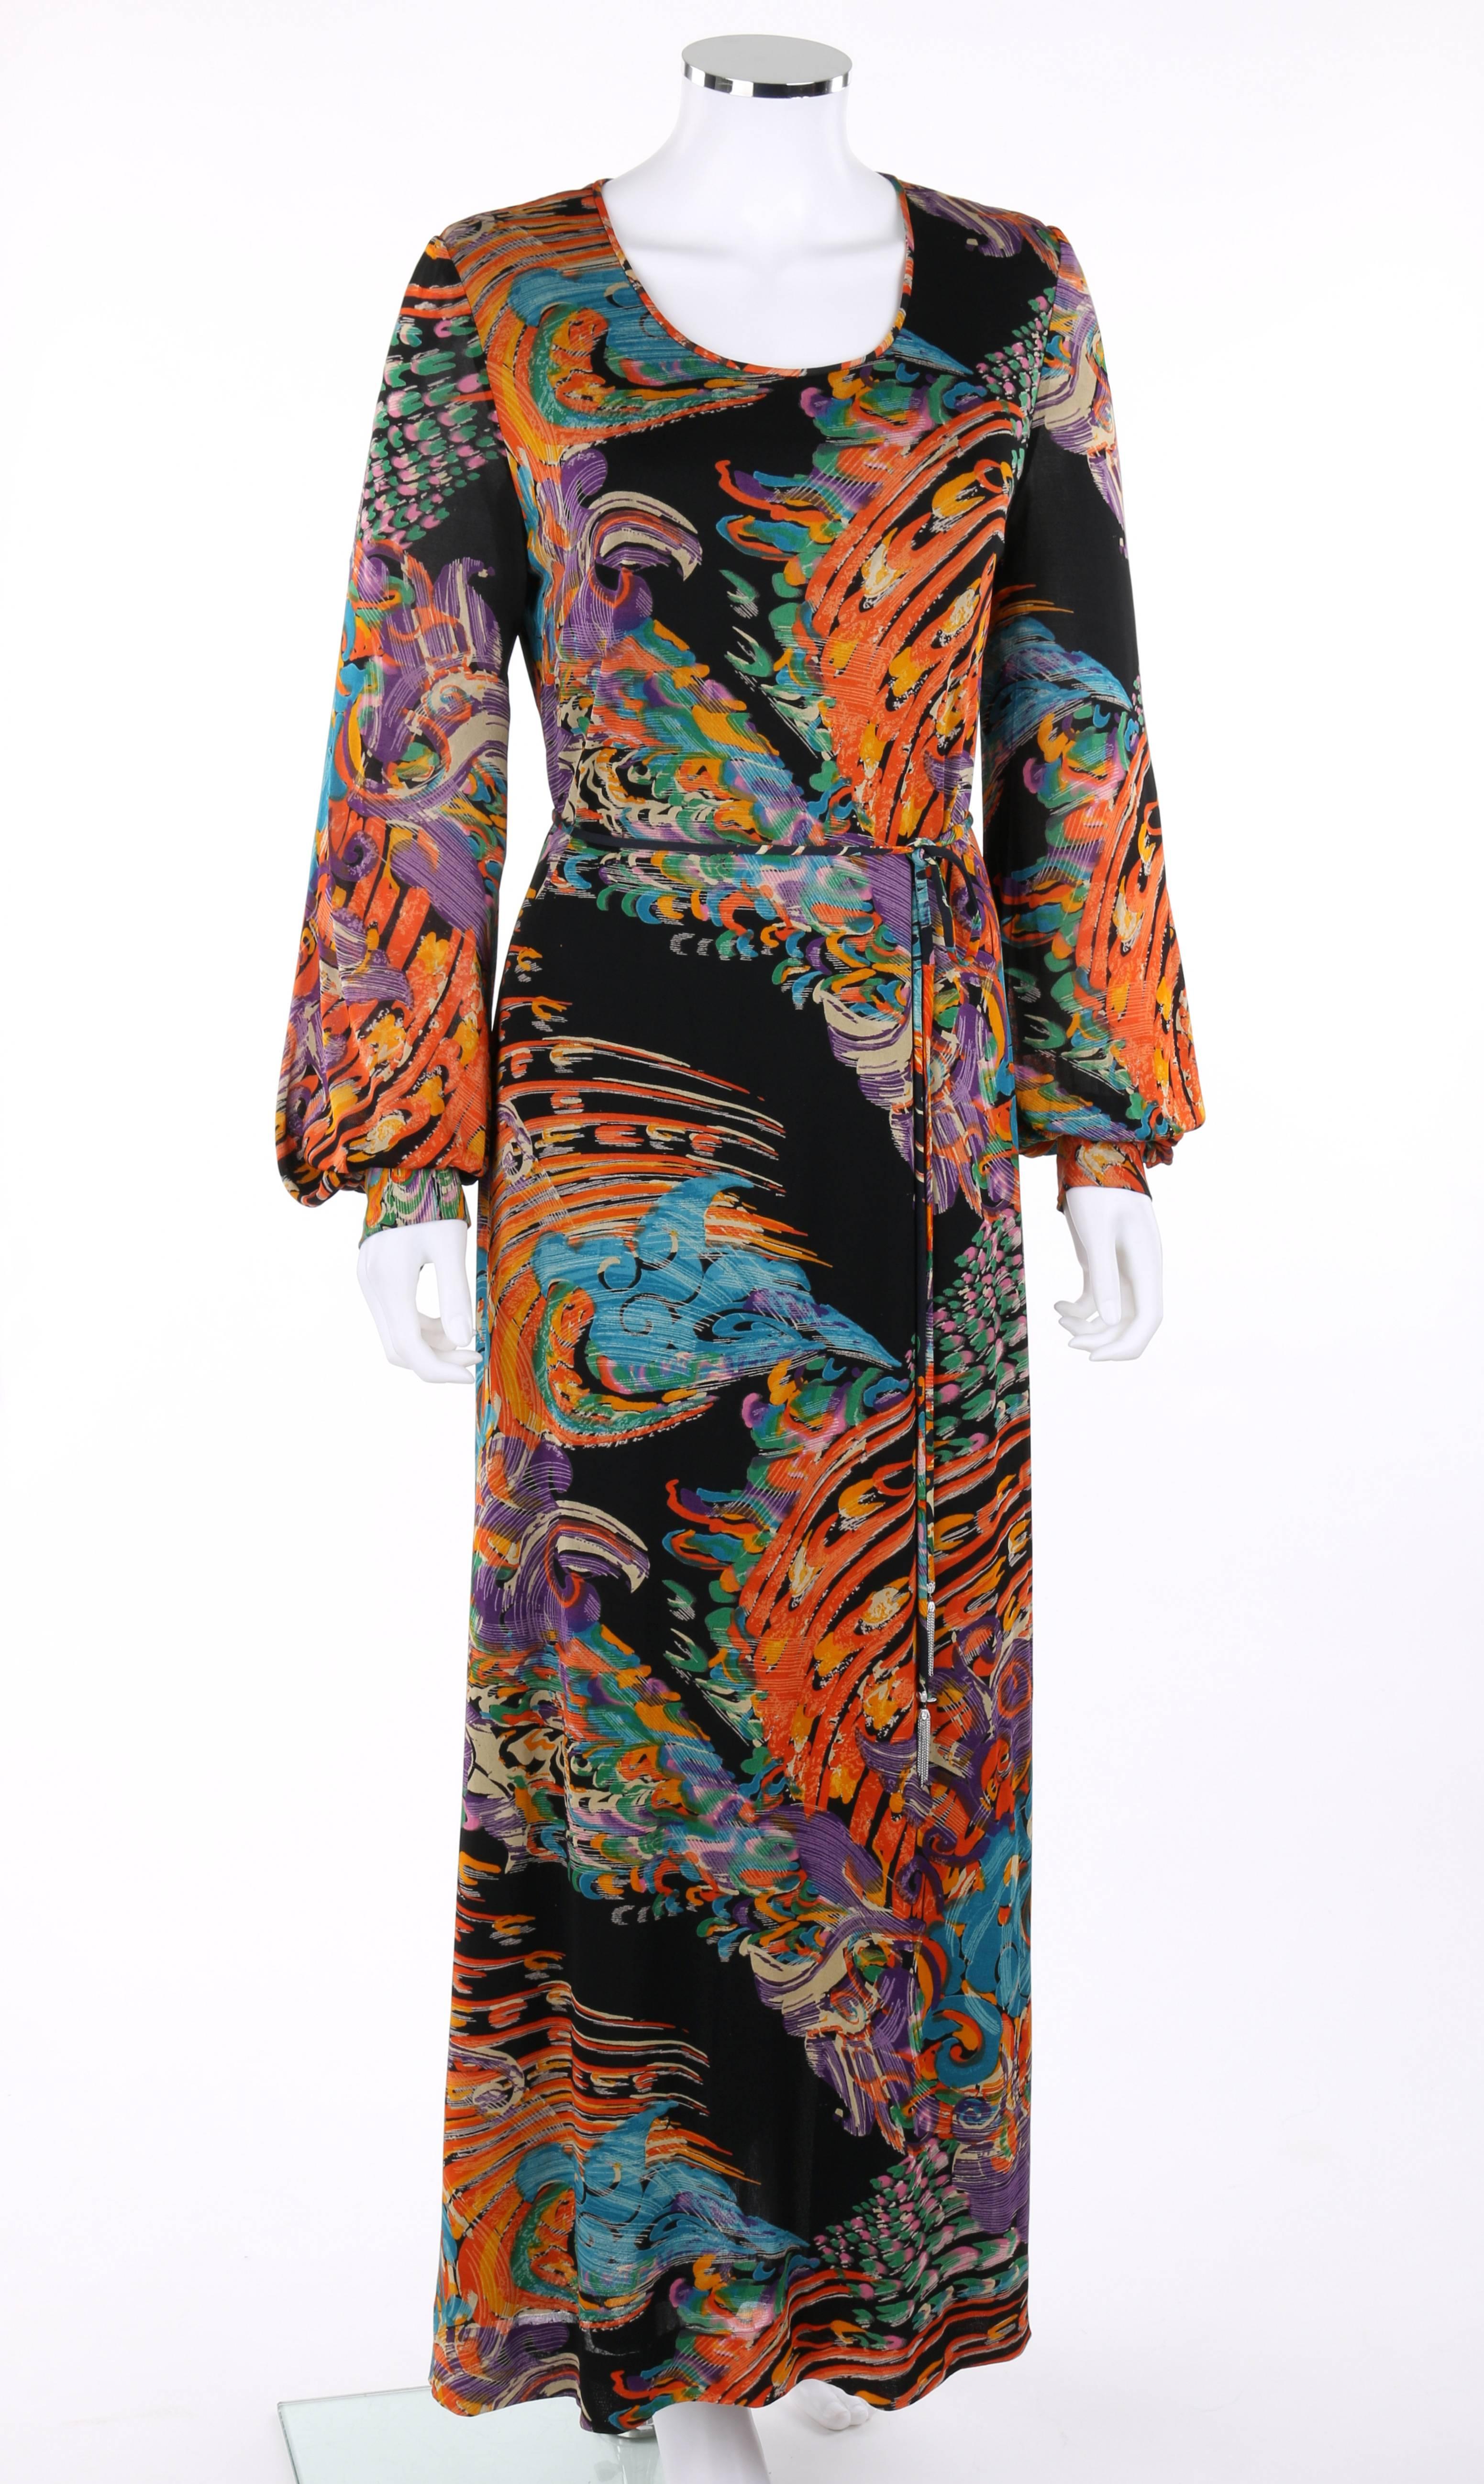 Vintage Givenchy Nouvelle Boutique c.1970's maxi robe en tricot. Impression picturale abstraite multicolore dans des tons d'orange, d'or, de vert, de bleu et de violet sur un tricot noir transparent. Manches longues de type bishop avec fermeture par